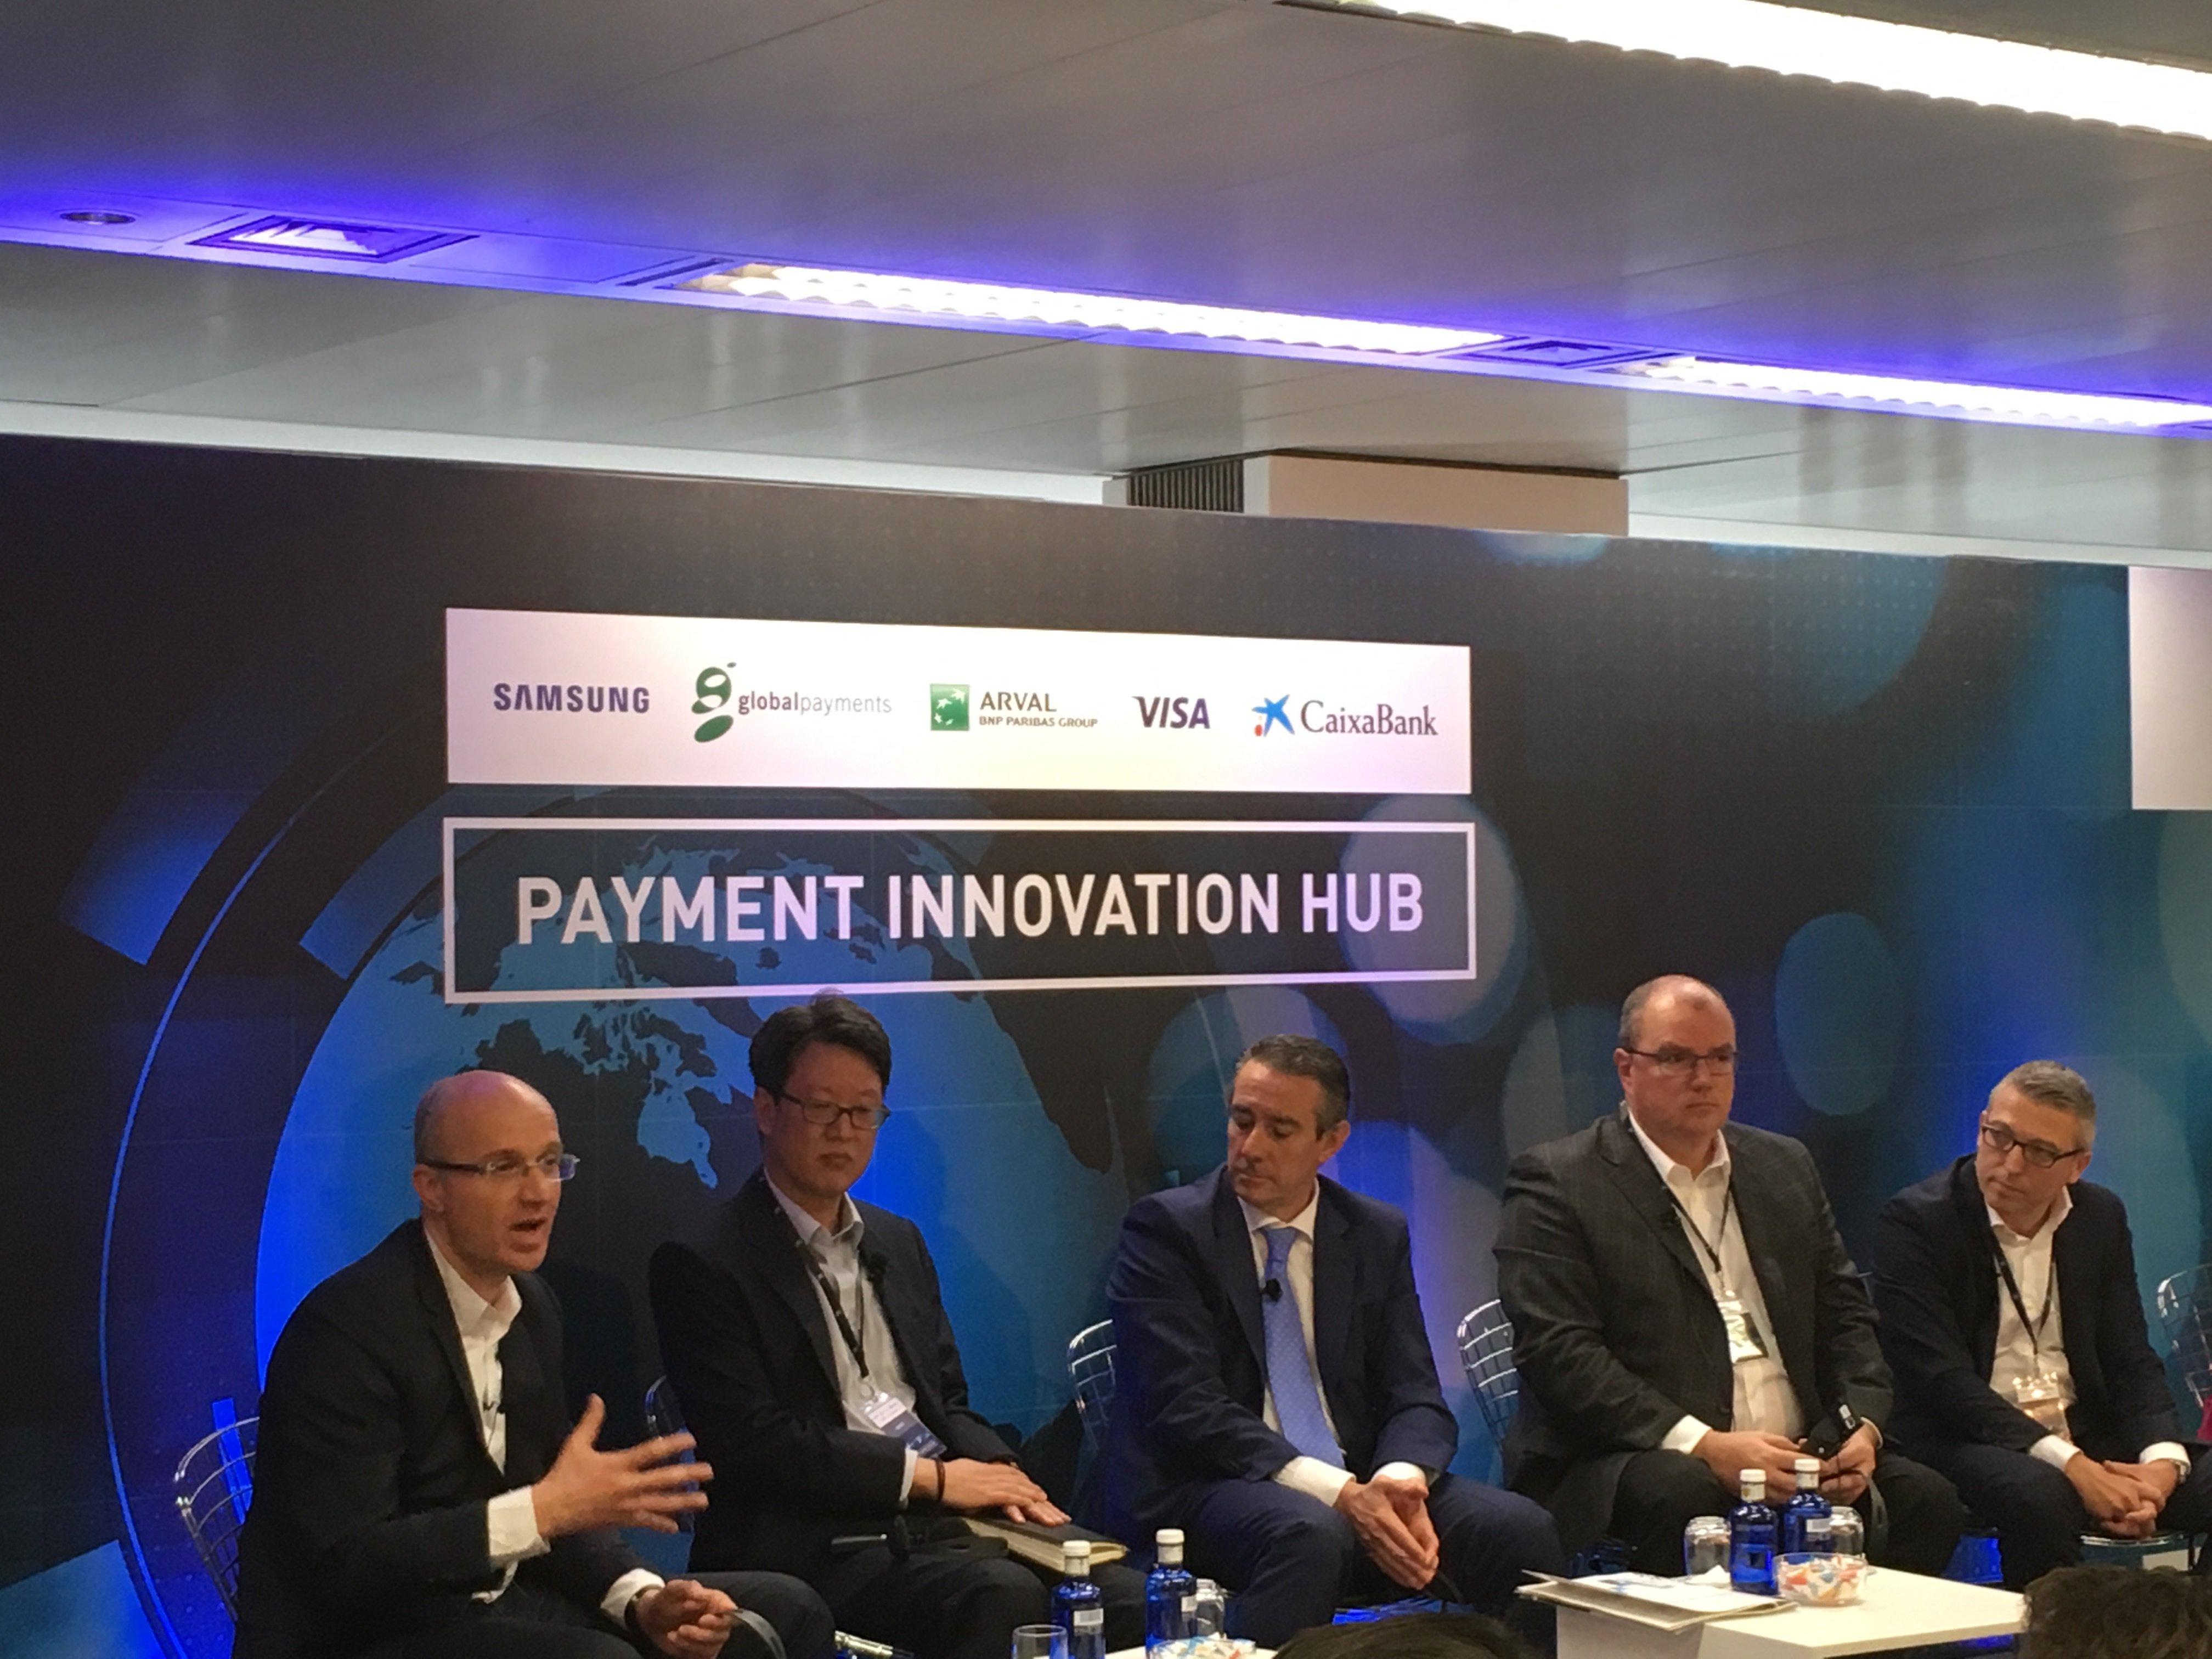 El 'hub' de CaixaBank per innovar en pagaments s'ubicarà al 'Pier 01'